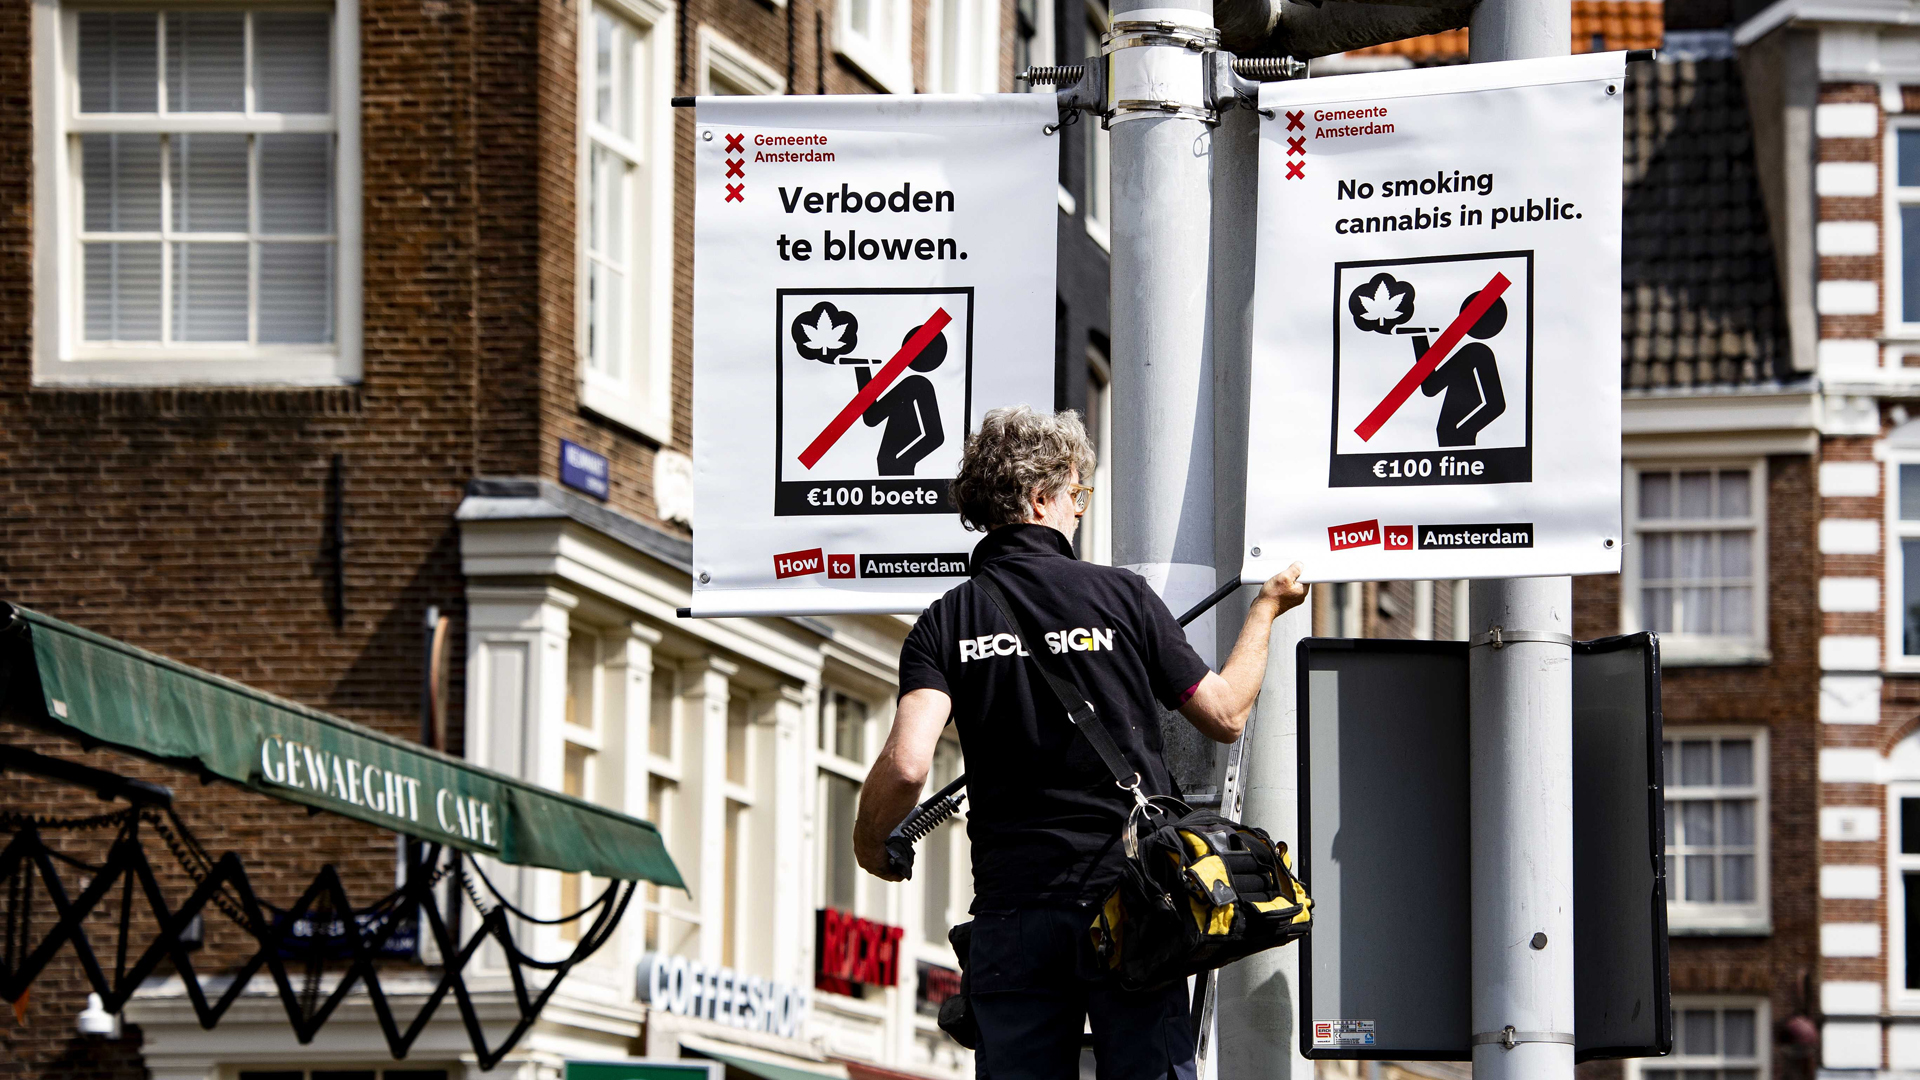 Ein Mitarbeiter platziert ein Verbotsschild in der Innenstadt von Amsterdam - darauf steht u.a. auf englisch: No smoking cannabis in public.